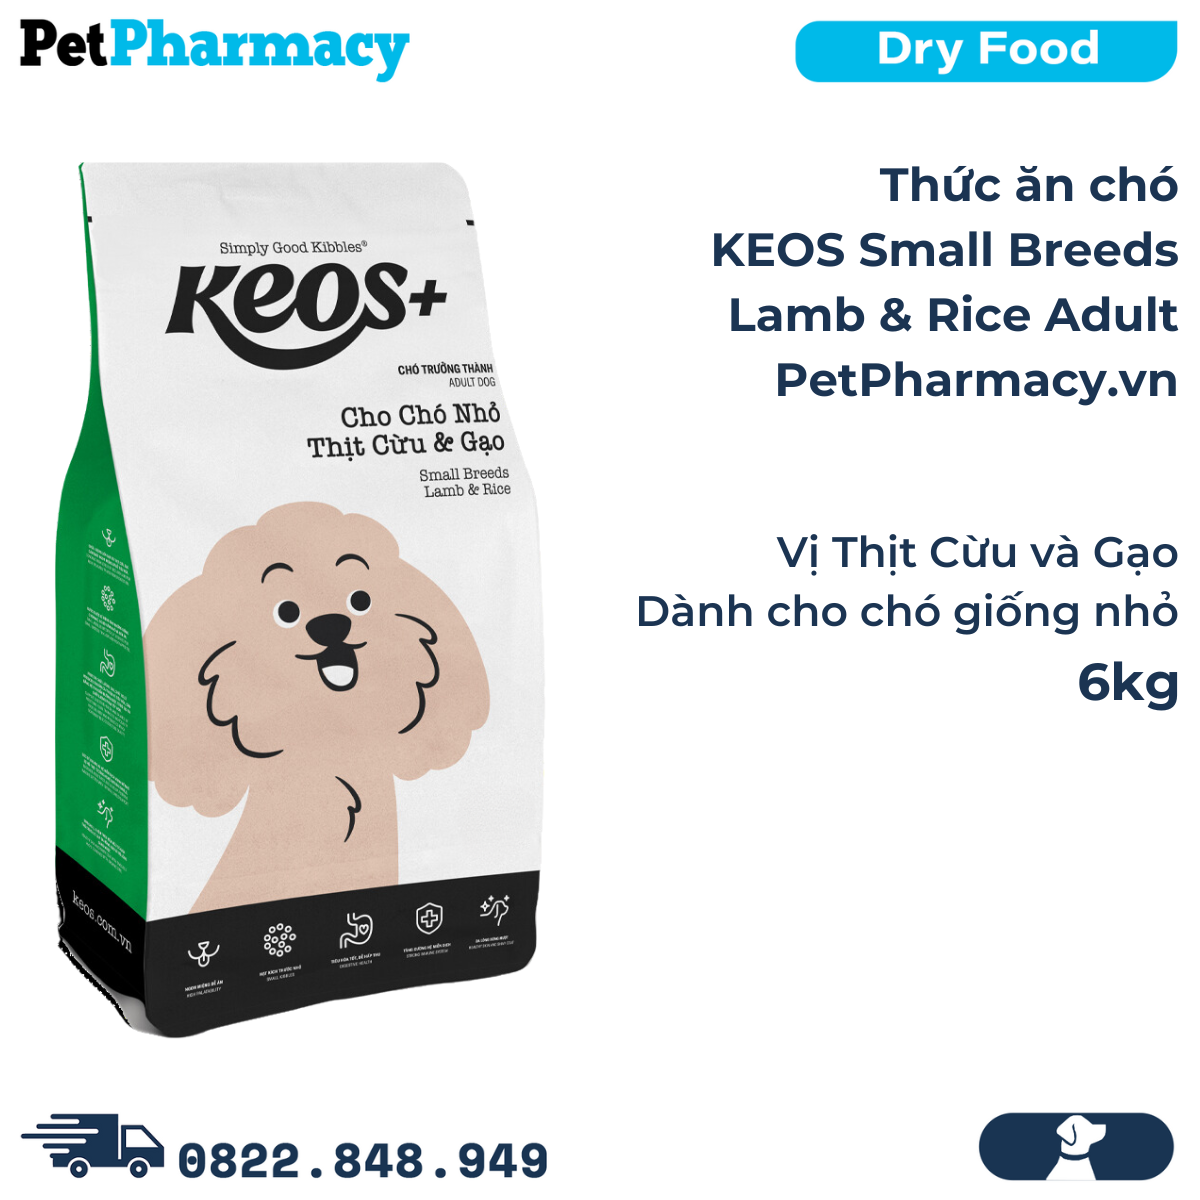  Thức ăn chó KEOS Small Breeds Lamb & Rice Adult 6kg - Vị Thịt Cừu và Gạo, dành cho chó giống nhỏ 